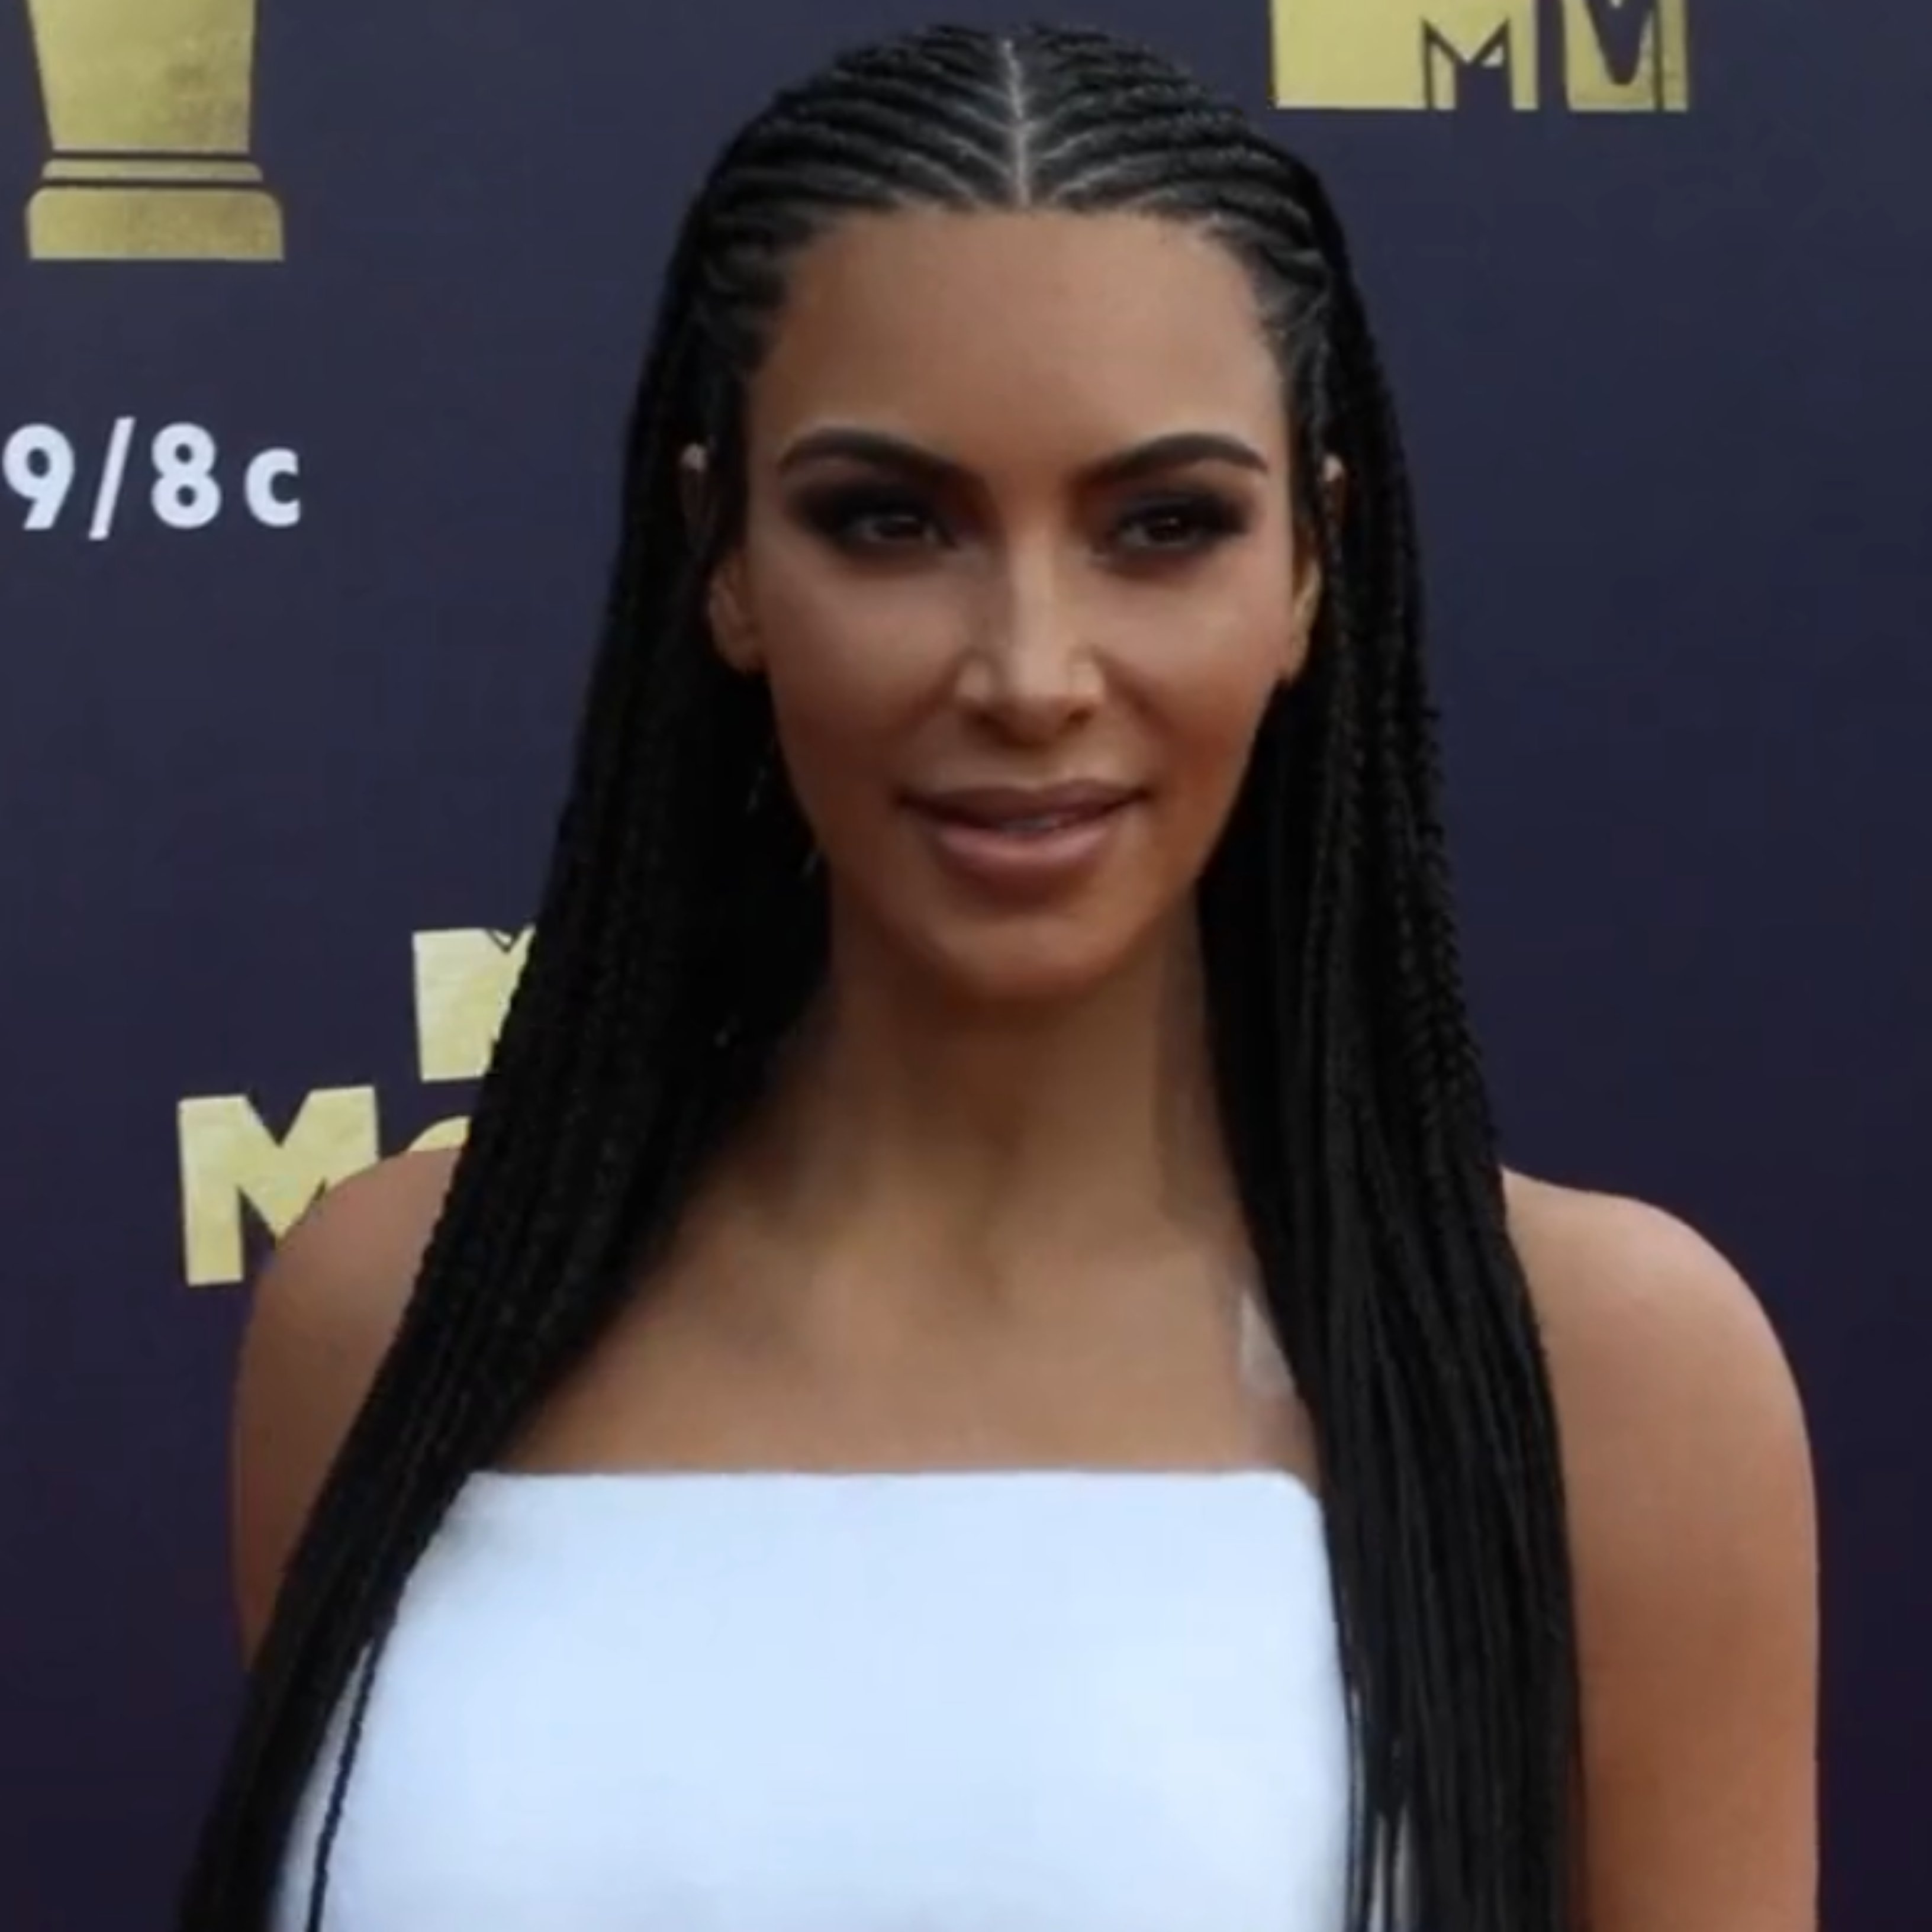 Segueix els passos de Kim Kardashian i demana el divorci només 1 any després de casar-se a Hollywood